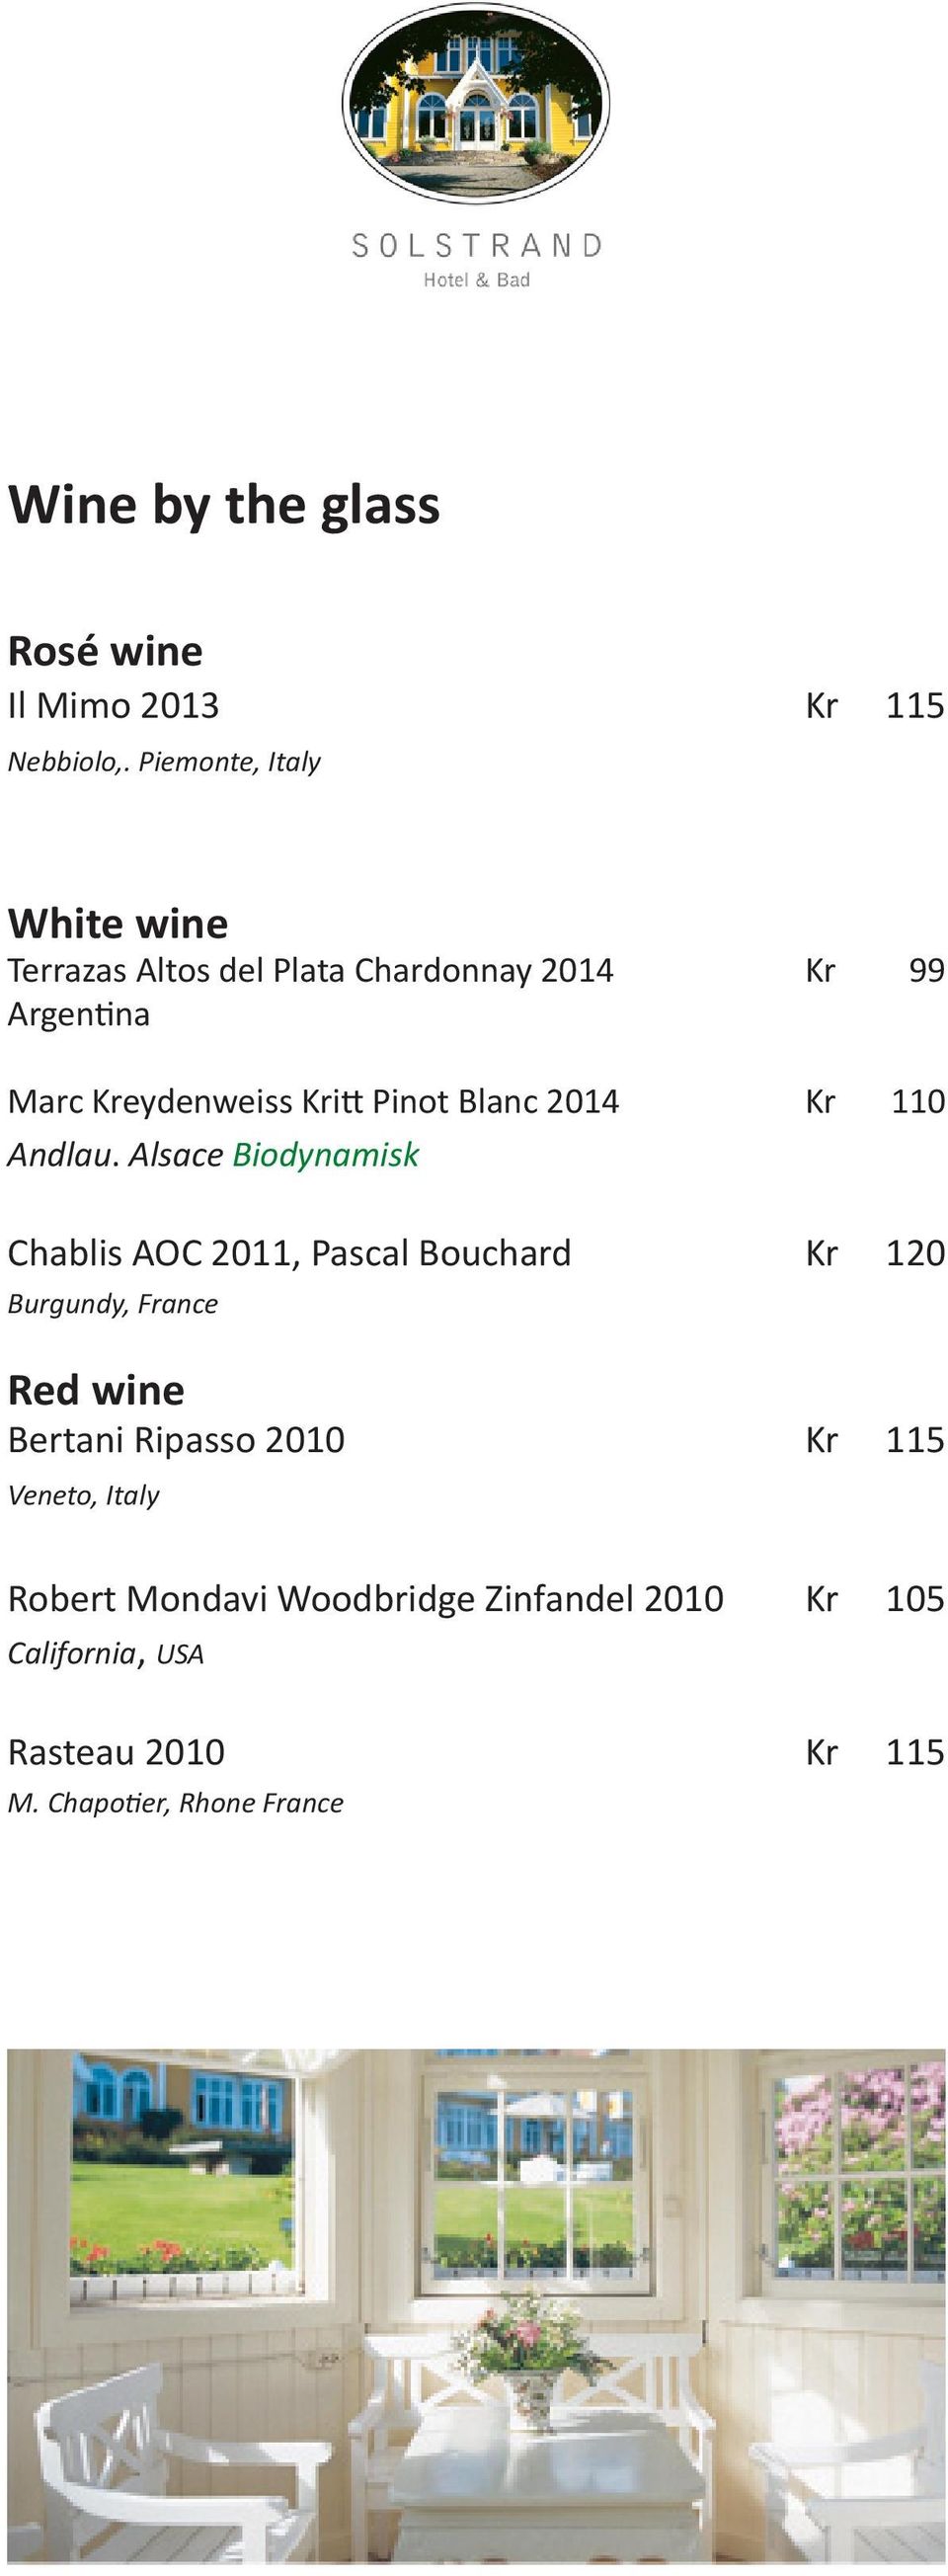 Pinot Blanc 2014 Kr 110 Andlau.